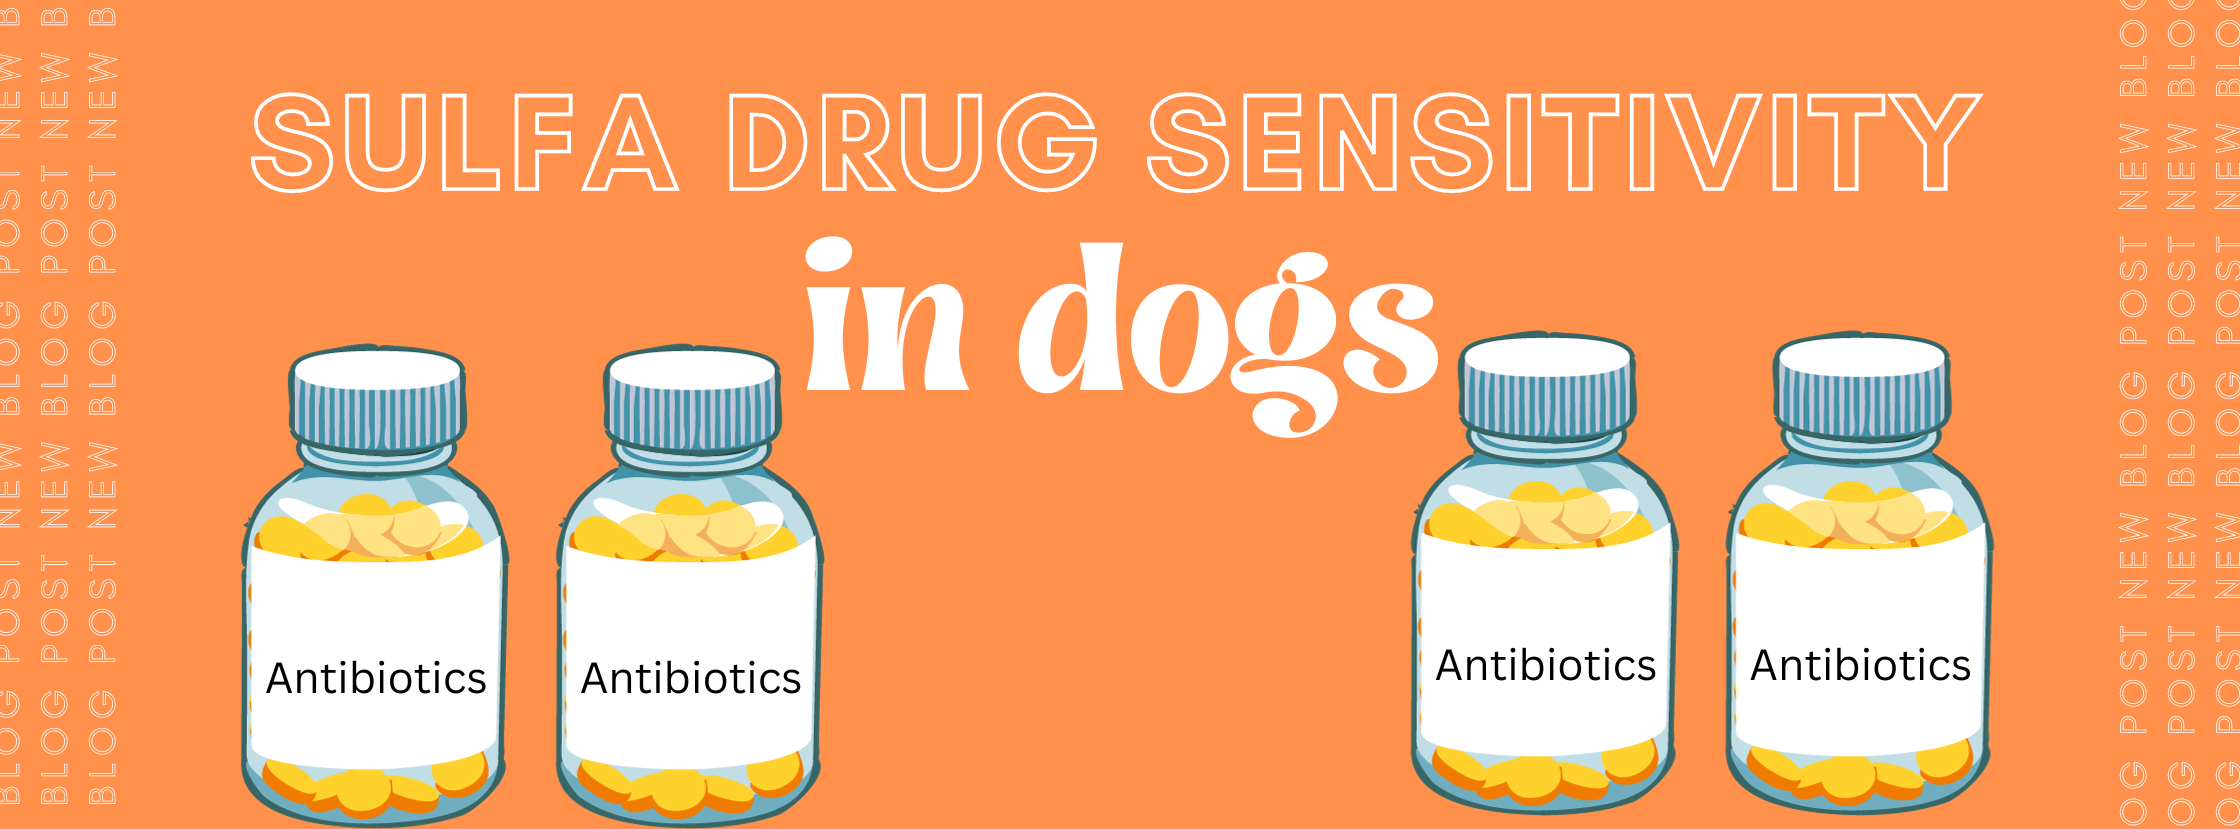 sulfa drug sensitivity in dogs main graphic